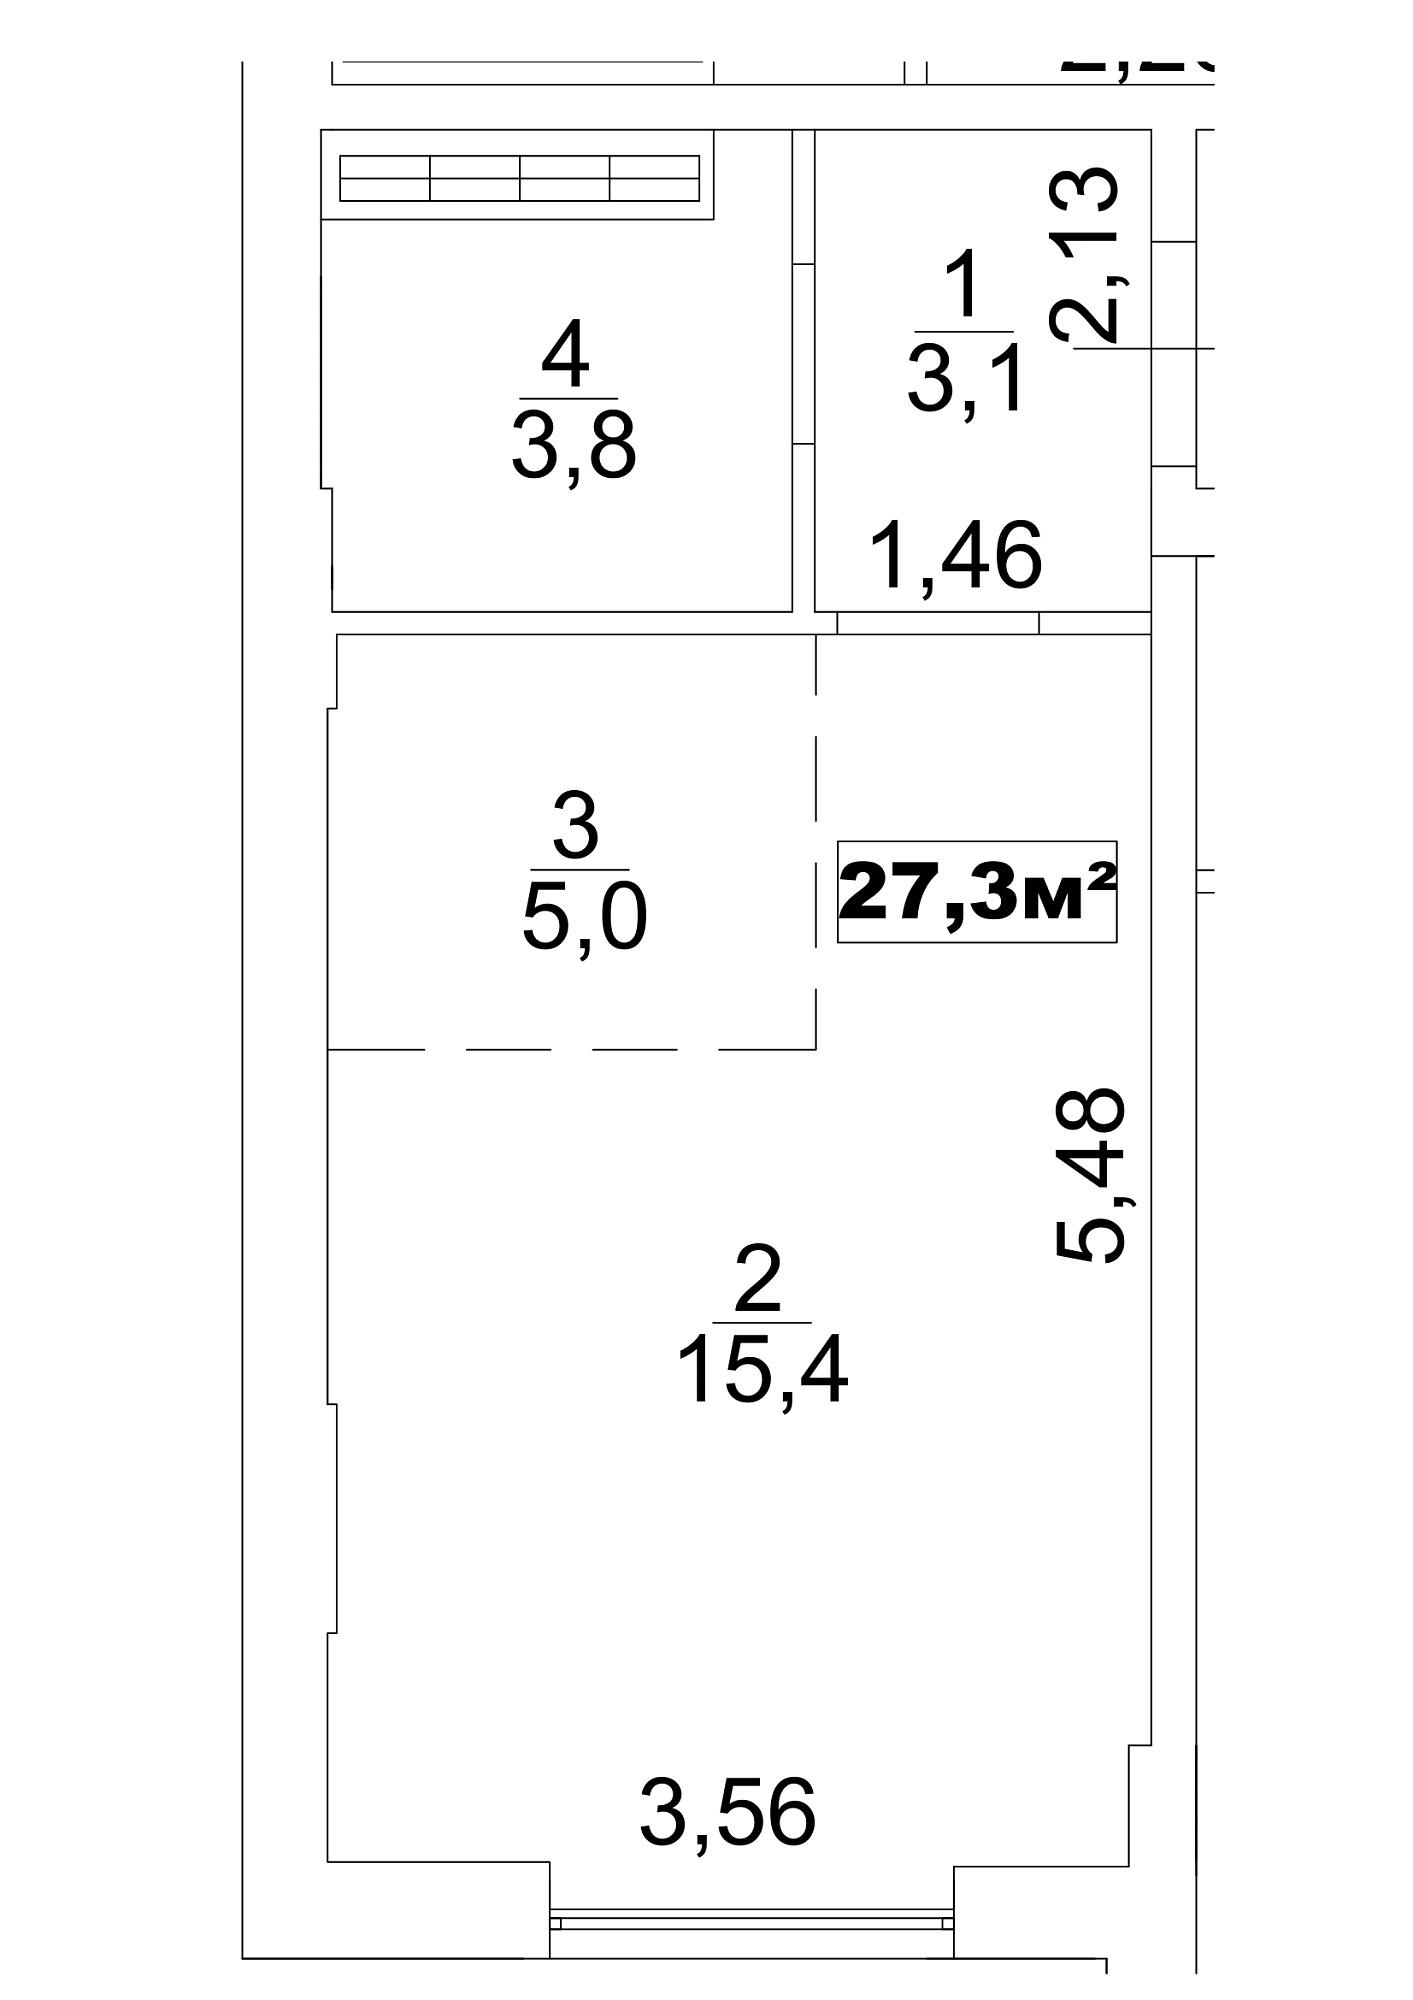 Планування Smart-квартира площею 27.3м2, AB-13-05/0036а.